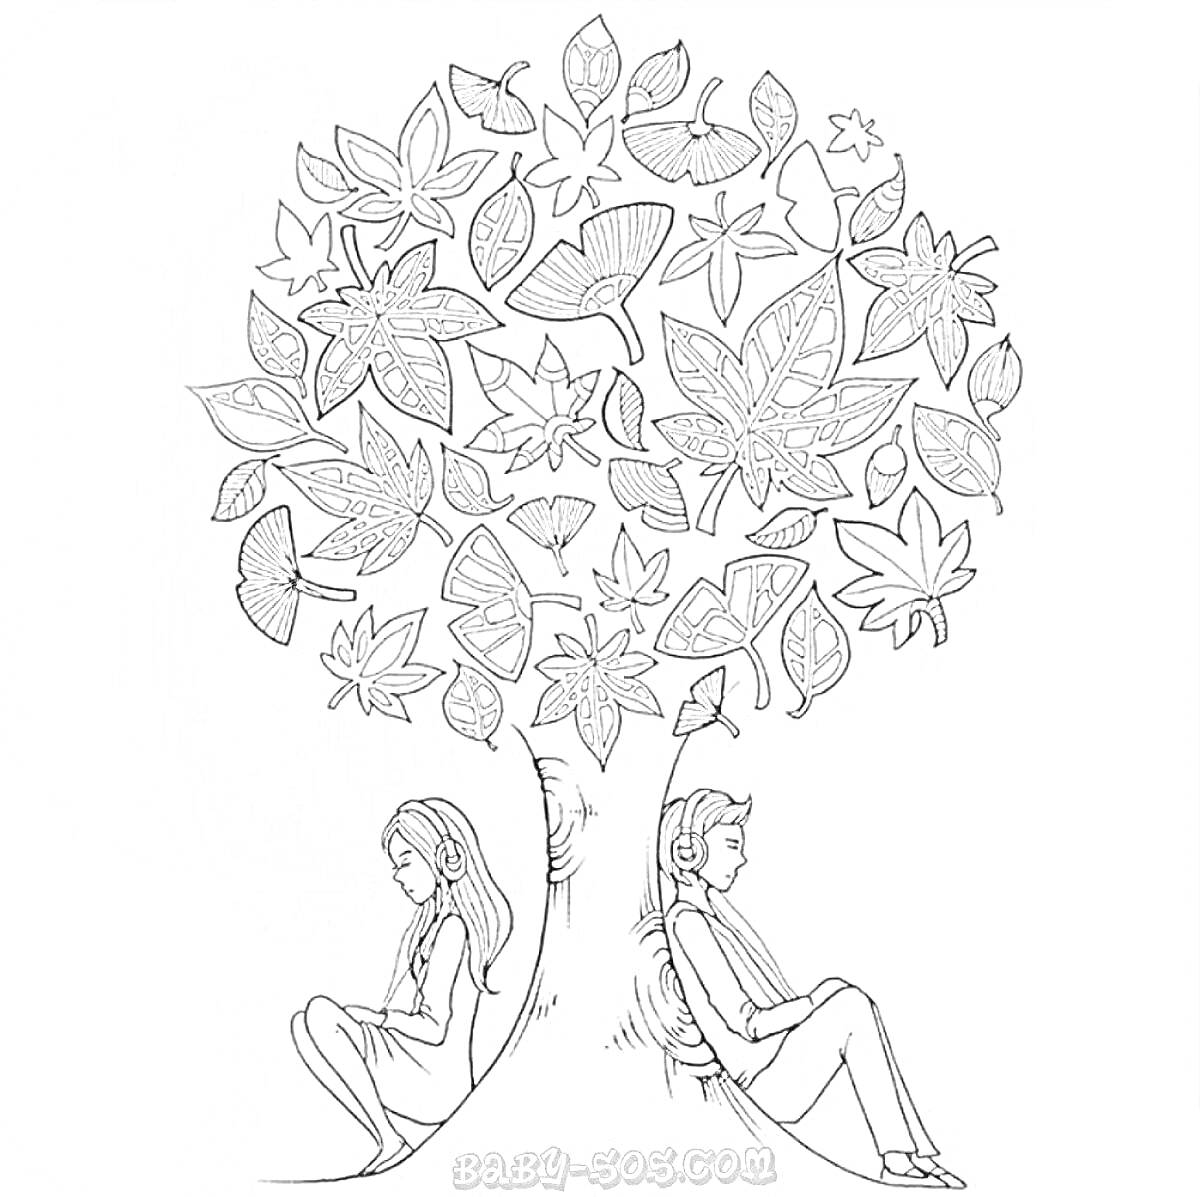 Раскраска Психологическая антистресс раскраска - женщина и мужчина сидят спиной к дереву, крона которого состоит из листьев и бабочек